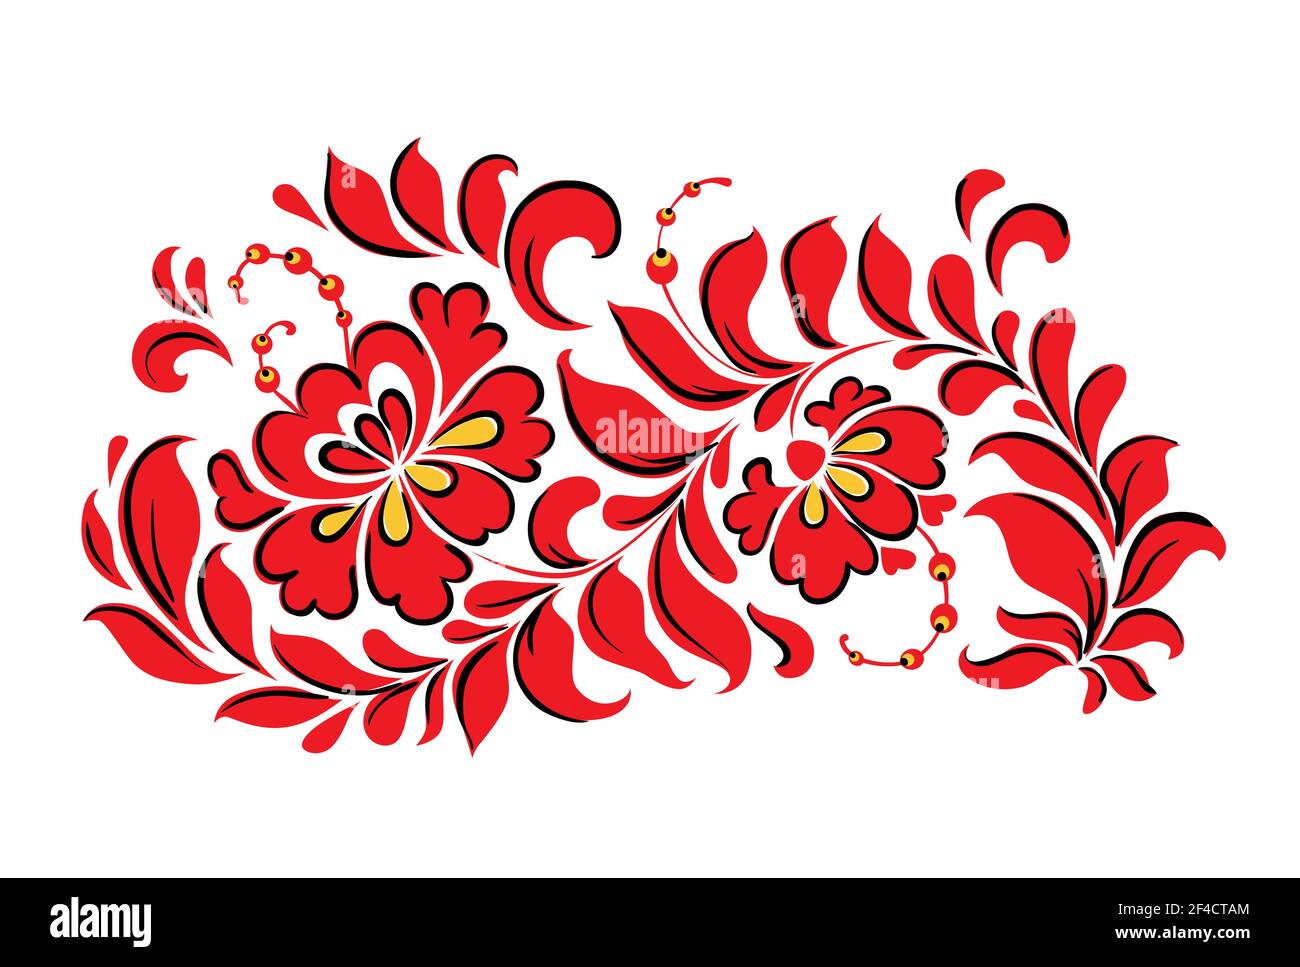 Traditionelle ukrainische Dekorative rote Floral Design Element auf einem weißen Hintergrund. Vector Illustration Stock Vektor